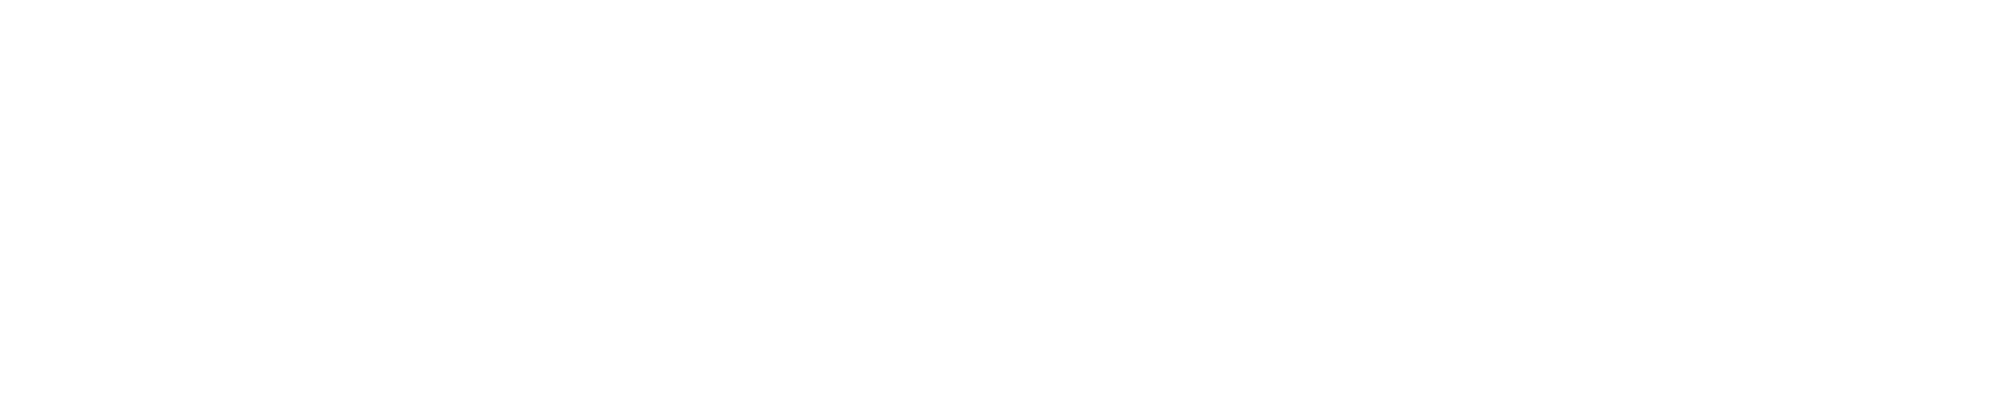 npg_logo